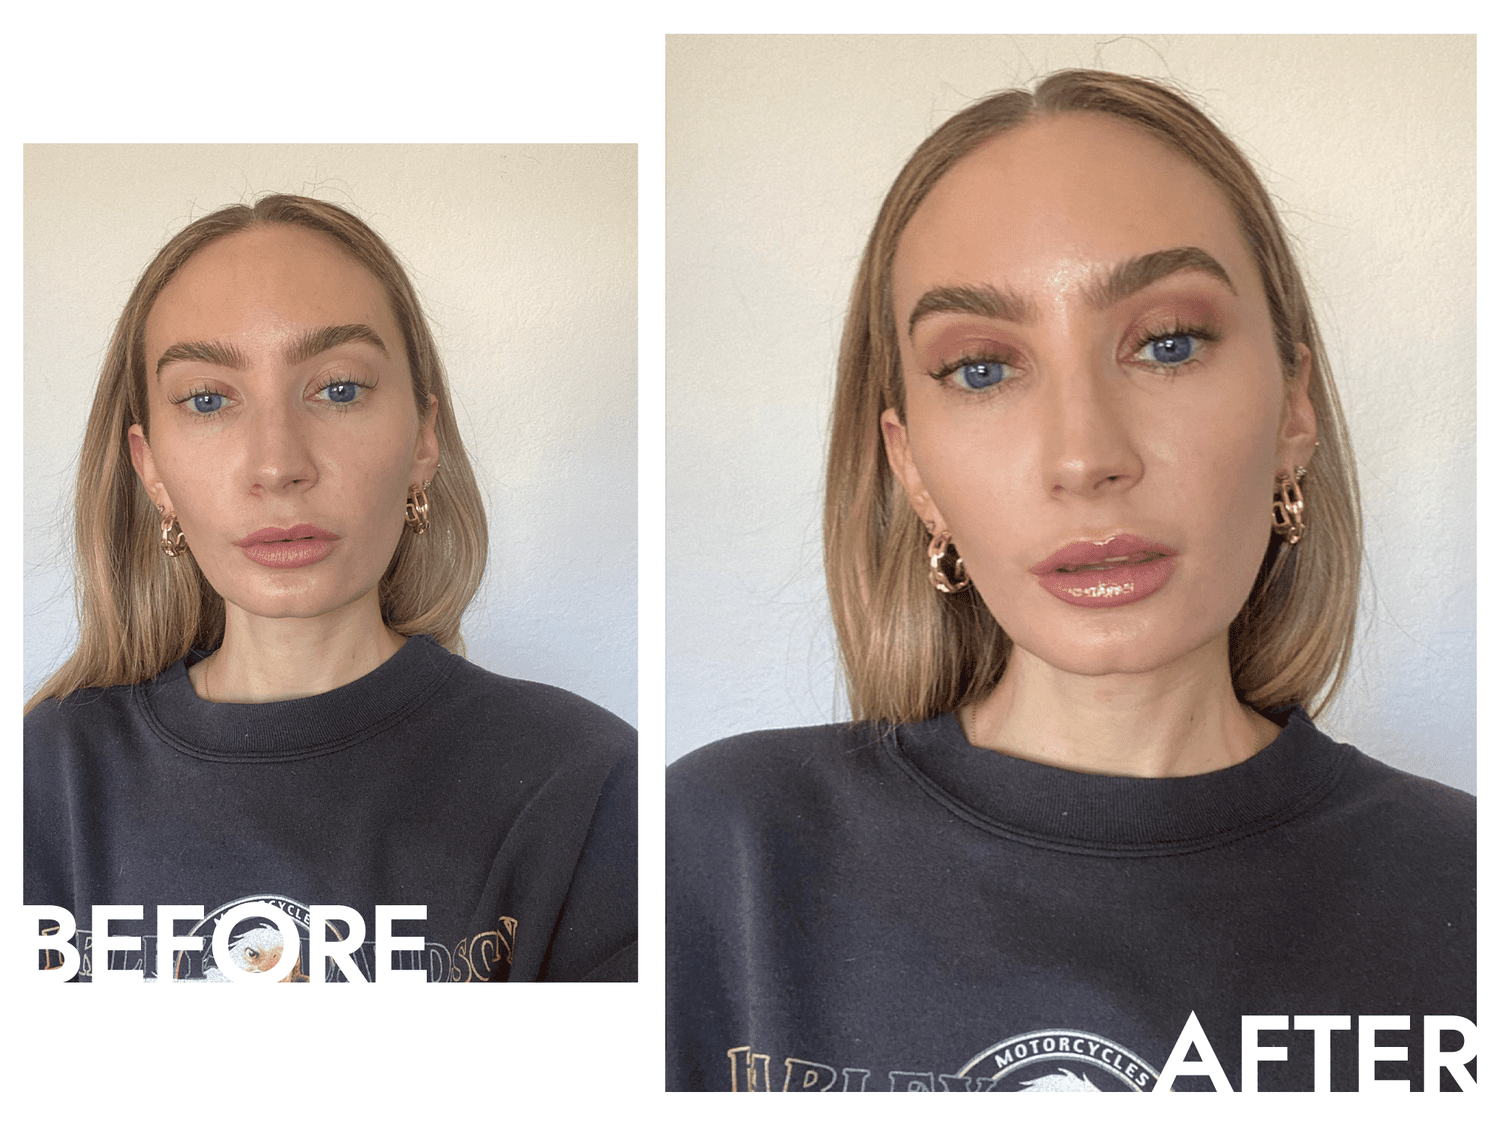 Fotos antes e depois de usar a base shiseido